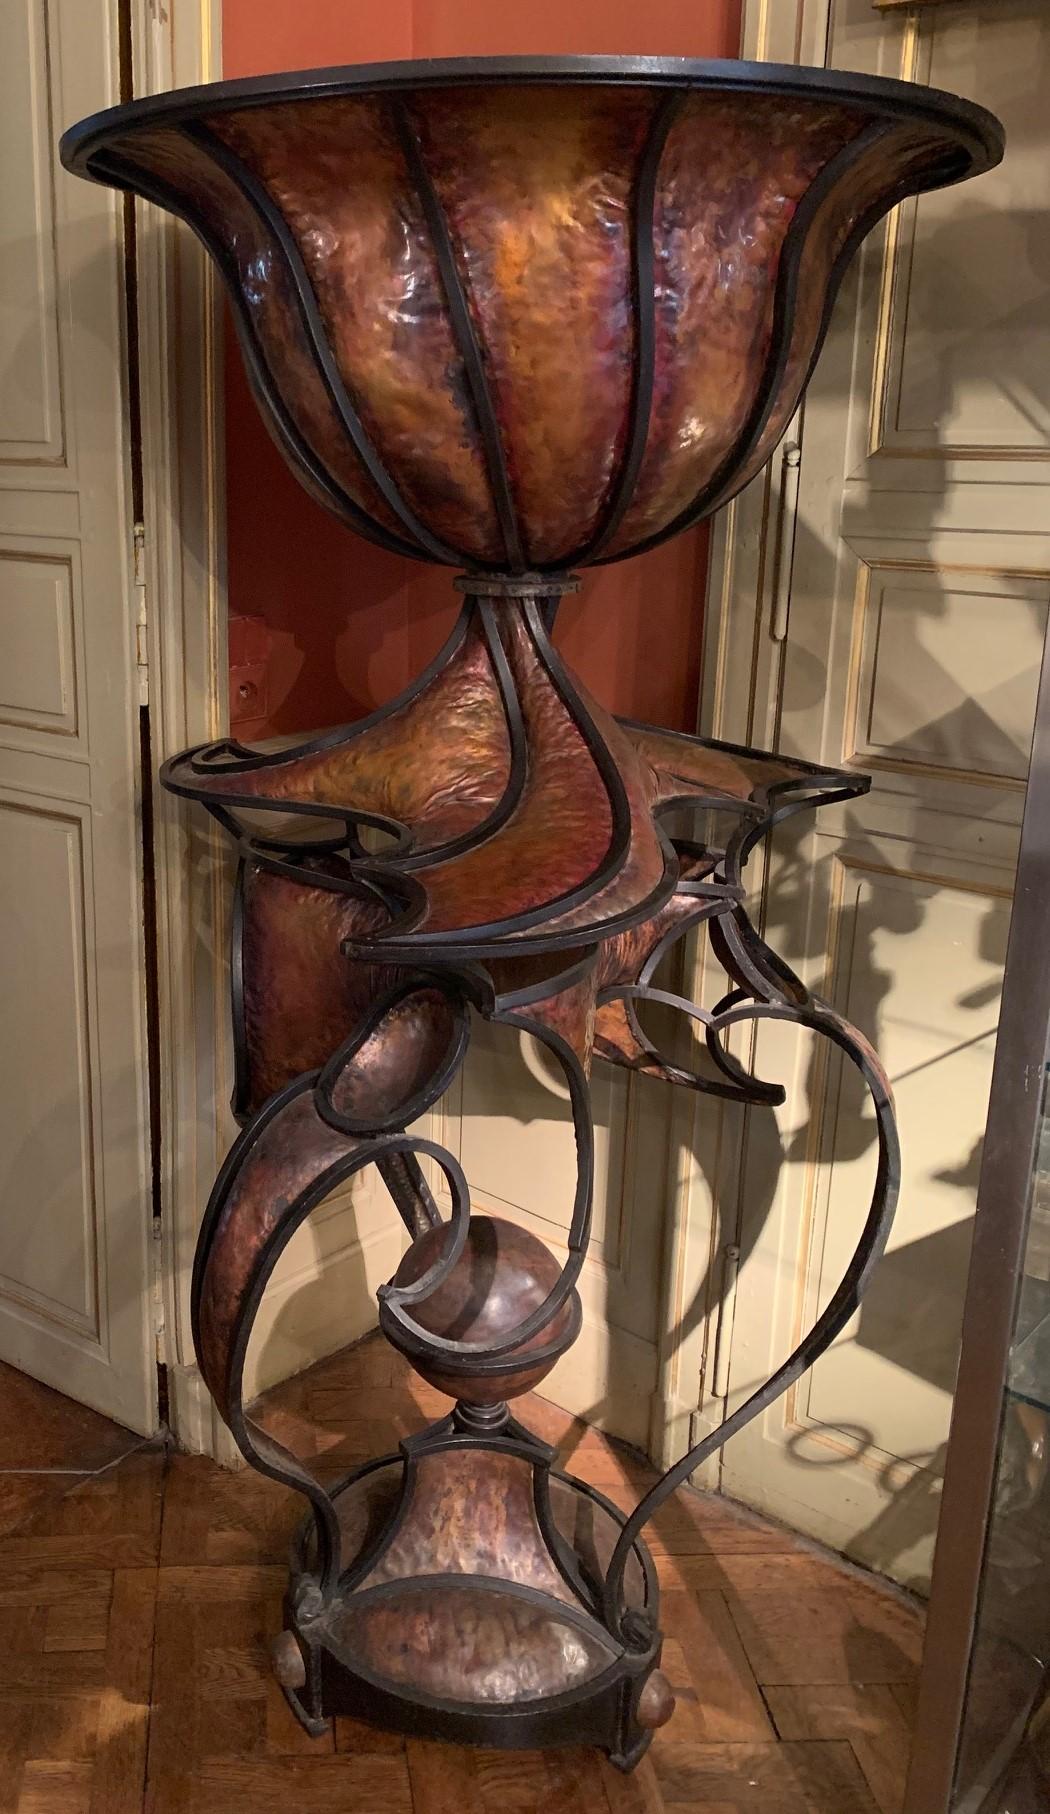 Pflanzgefäß aus Kupfer und Schmiedeeisen, oben eine große, ausgestellte Schale, alles auf einem runden Dreibein-Sockel ruhend.
André Dubreuil wurde 1951 in Lyon geboren und starb im April 2022.
Er war einer der einzigartigsten Schöpfer seiner Zeit.